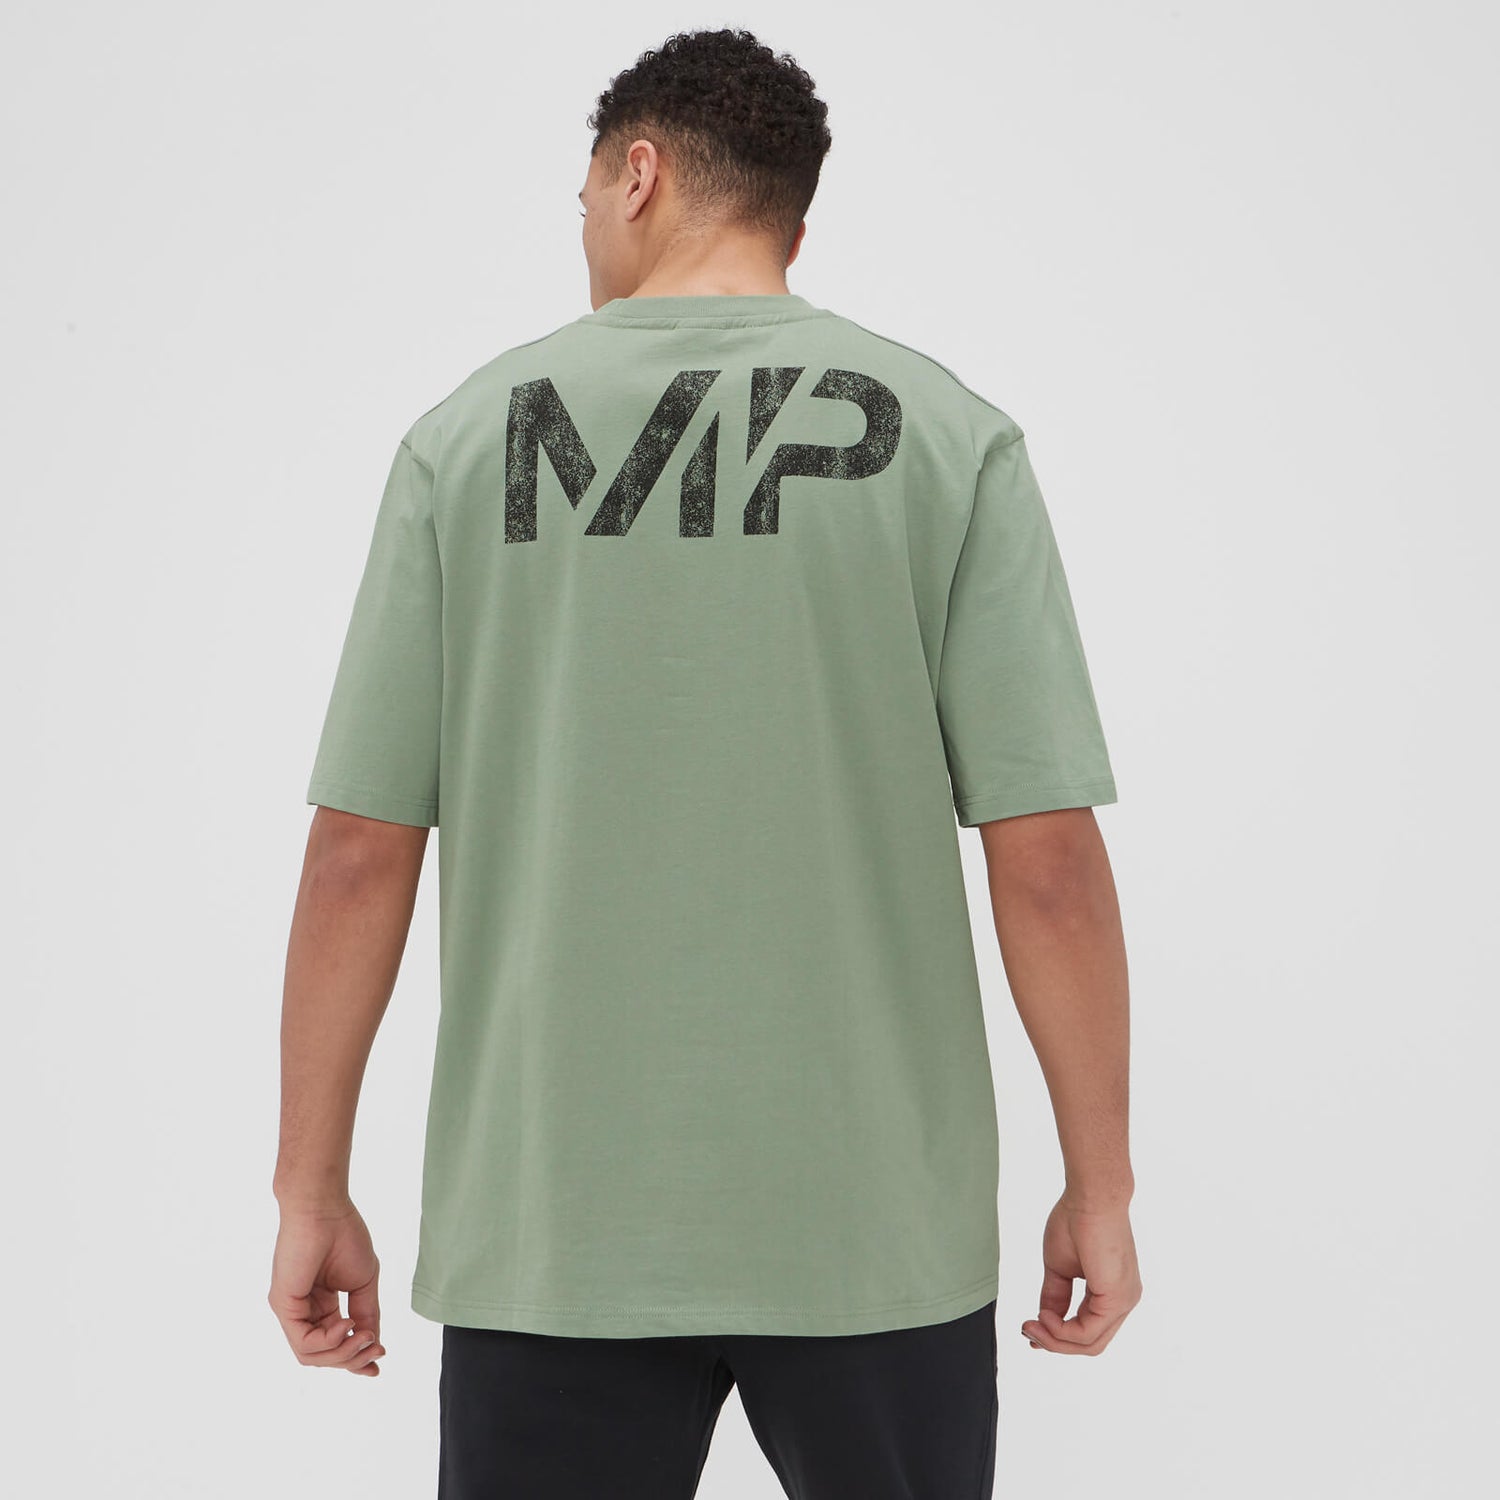 MP muška Grit Graphics majica širokog kroja - isprani žad